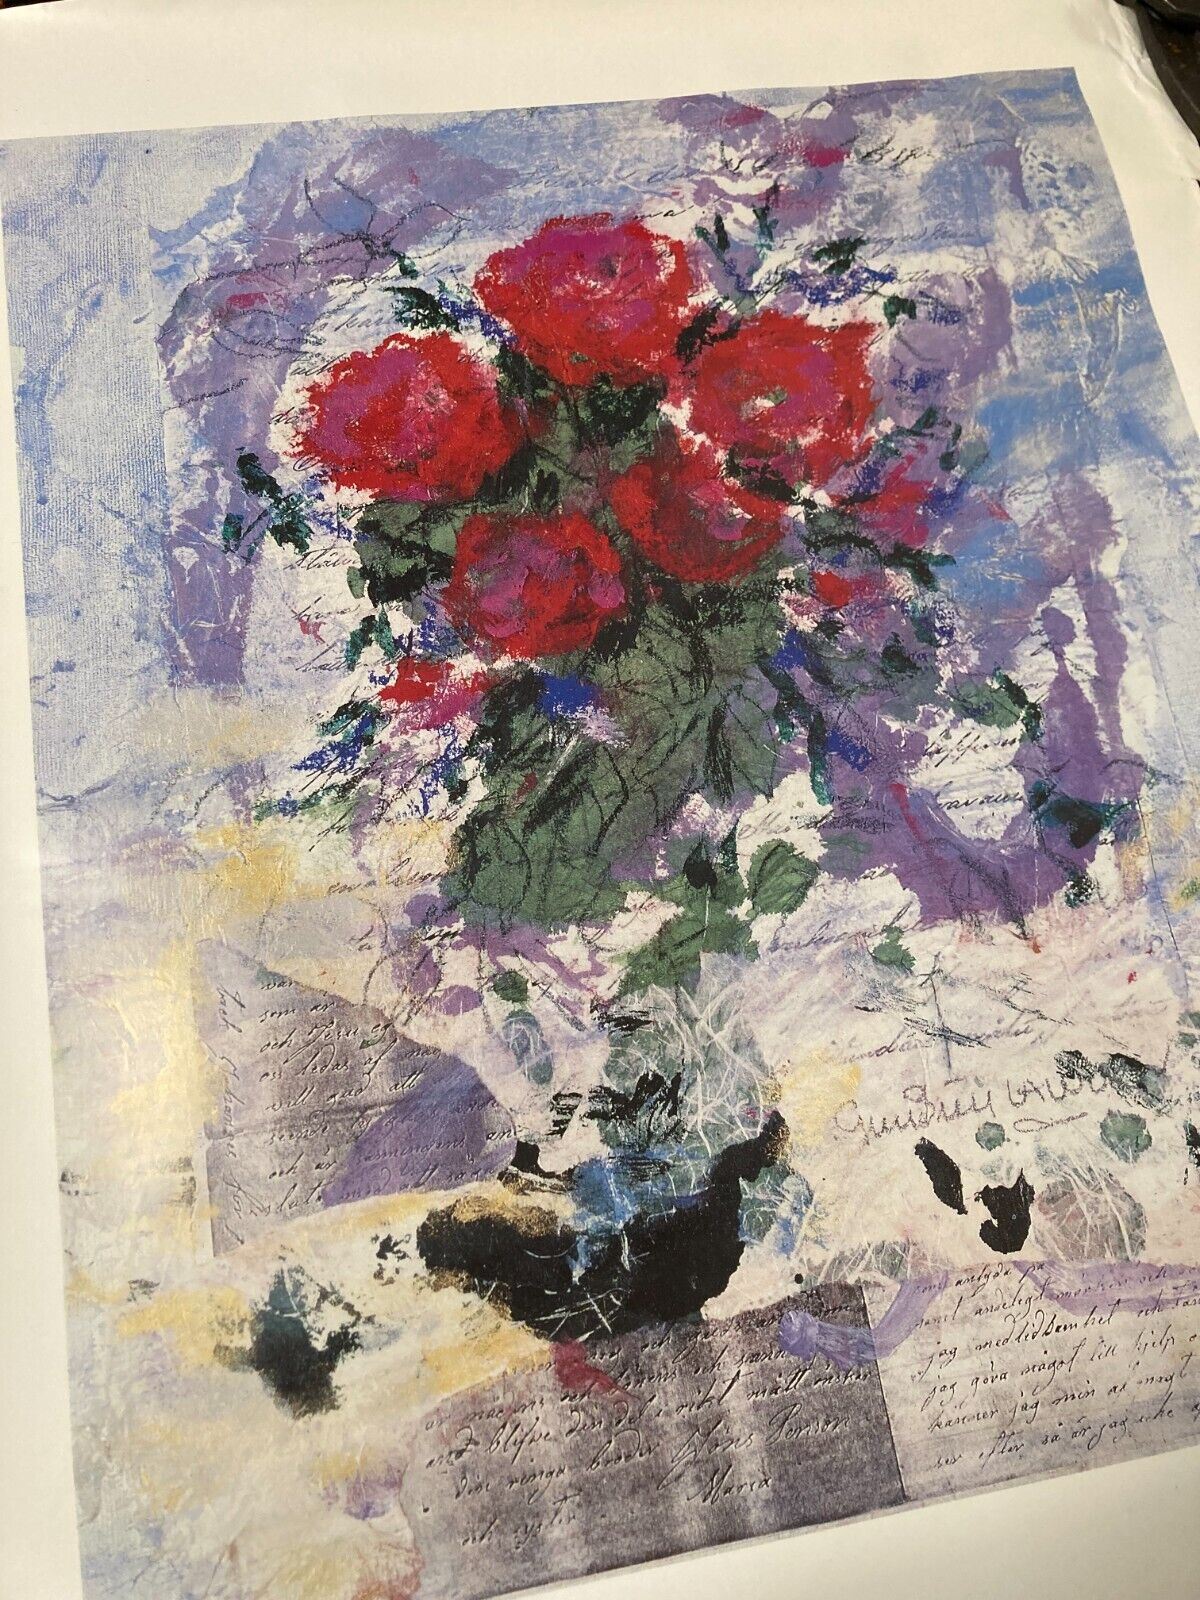 Red Roses by Gun-Britt Lawum Kärlekens fackla brinner an Offset Print 42x55cm